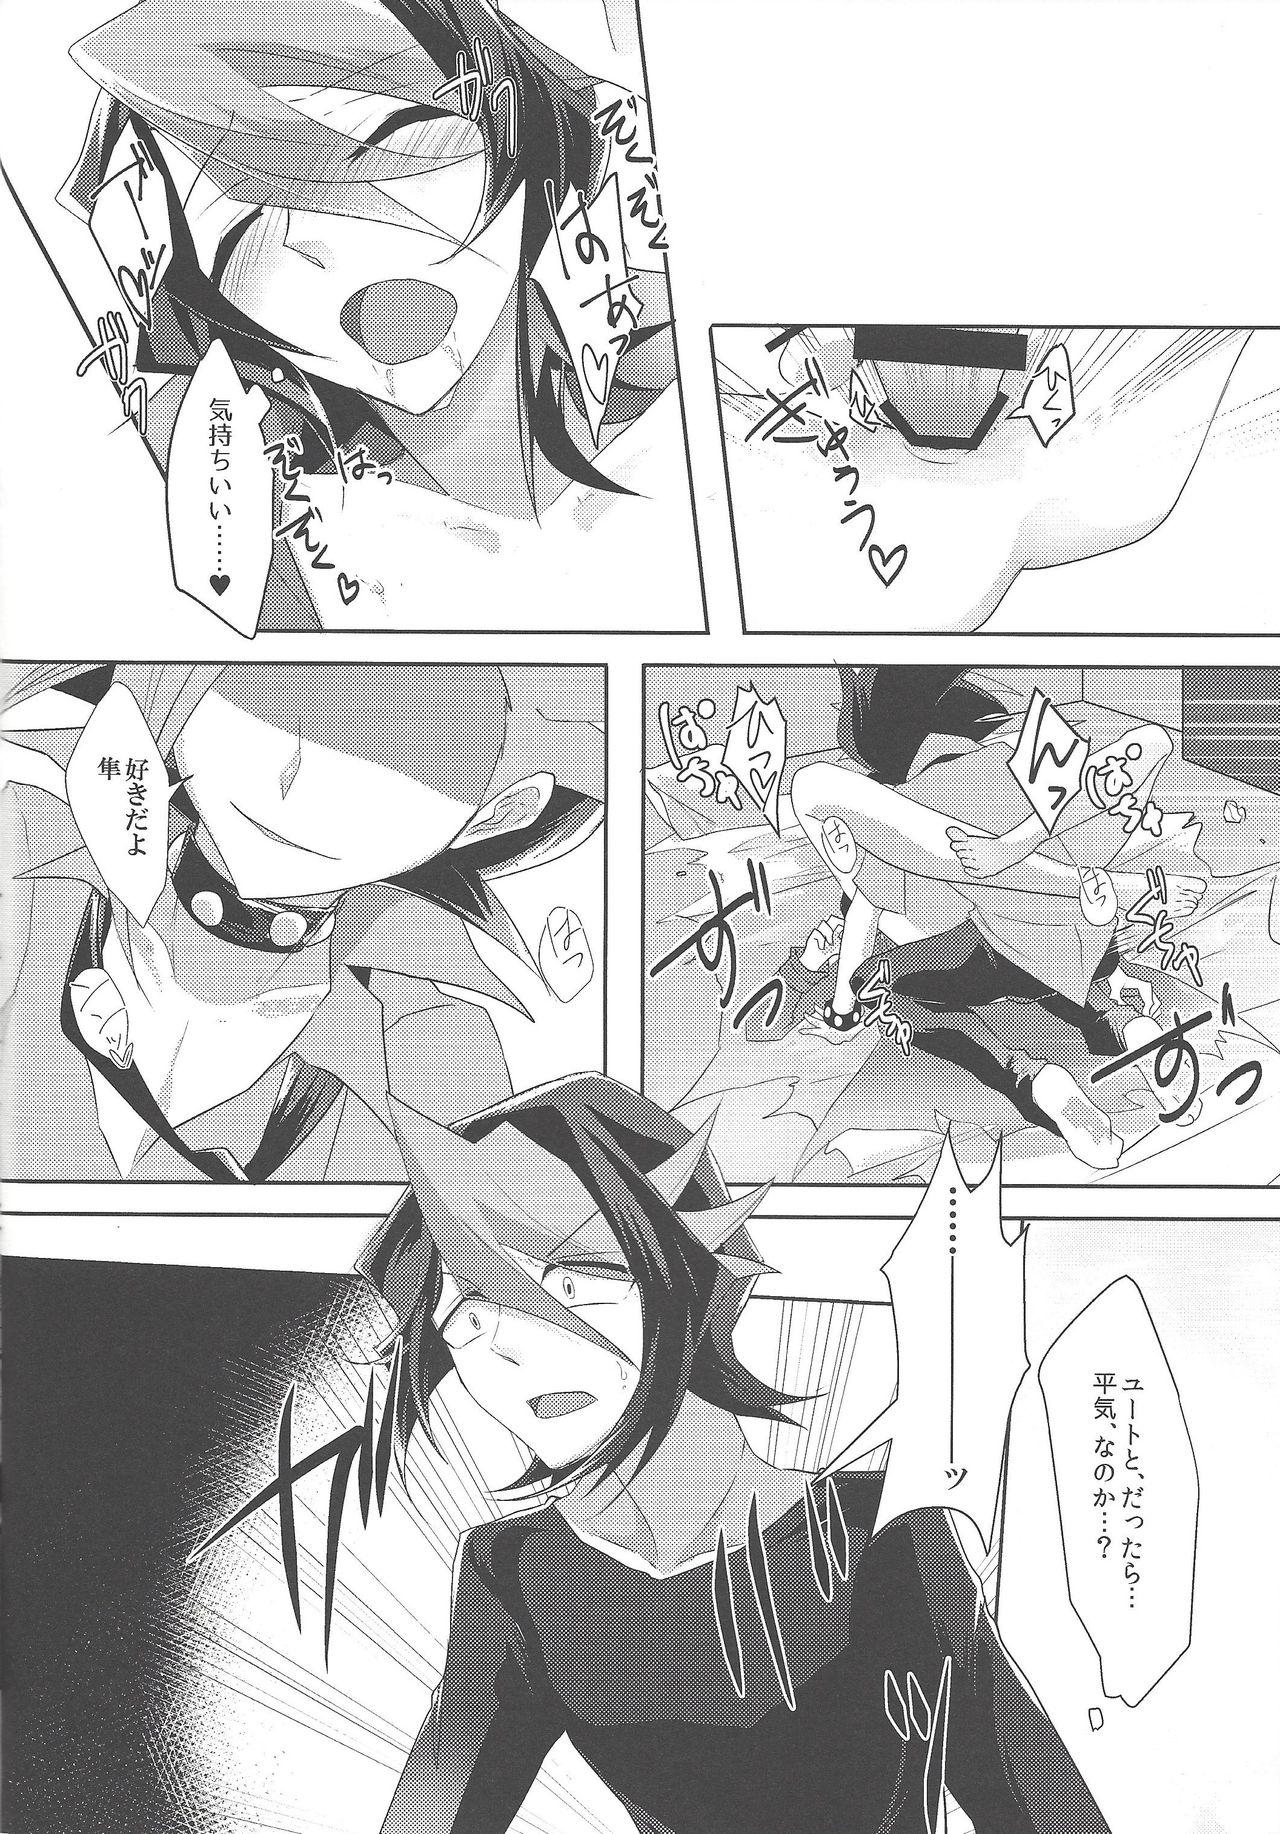 Nut Kimi to kokoro no risōkyō - Yu-gi-oh arc-v Skirt - Page 9